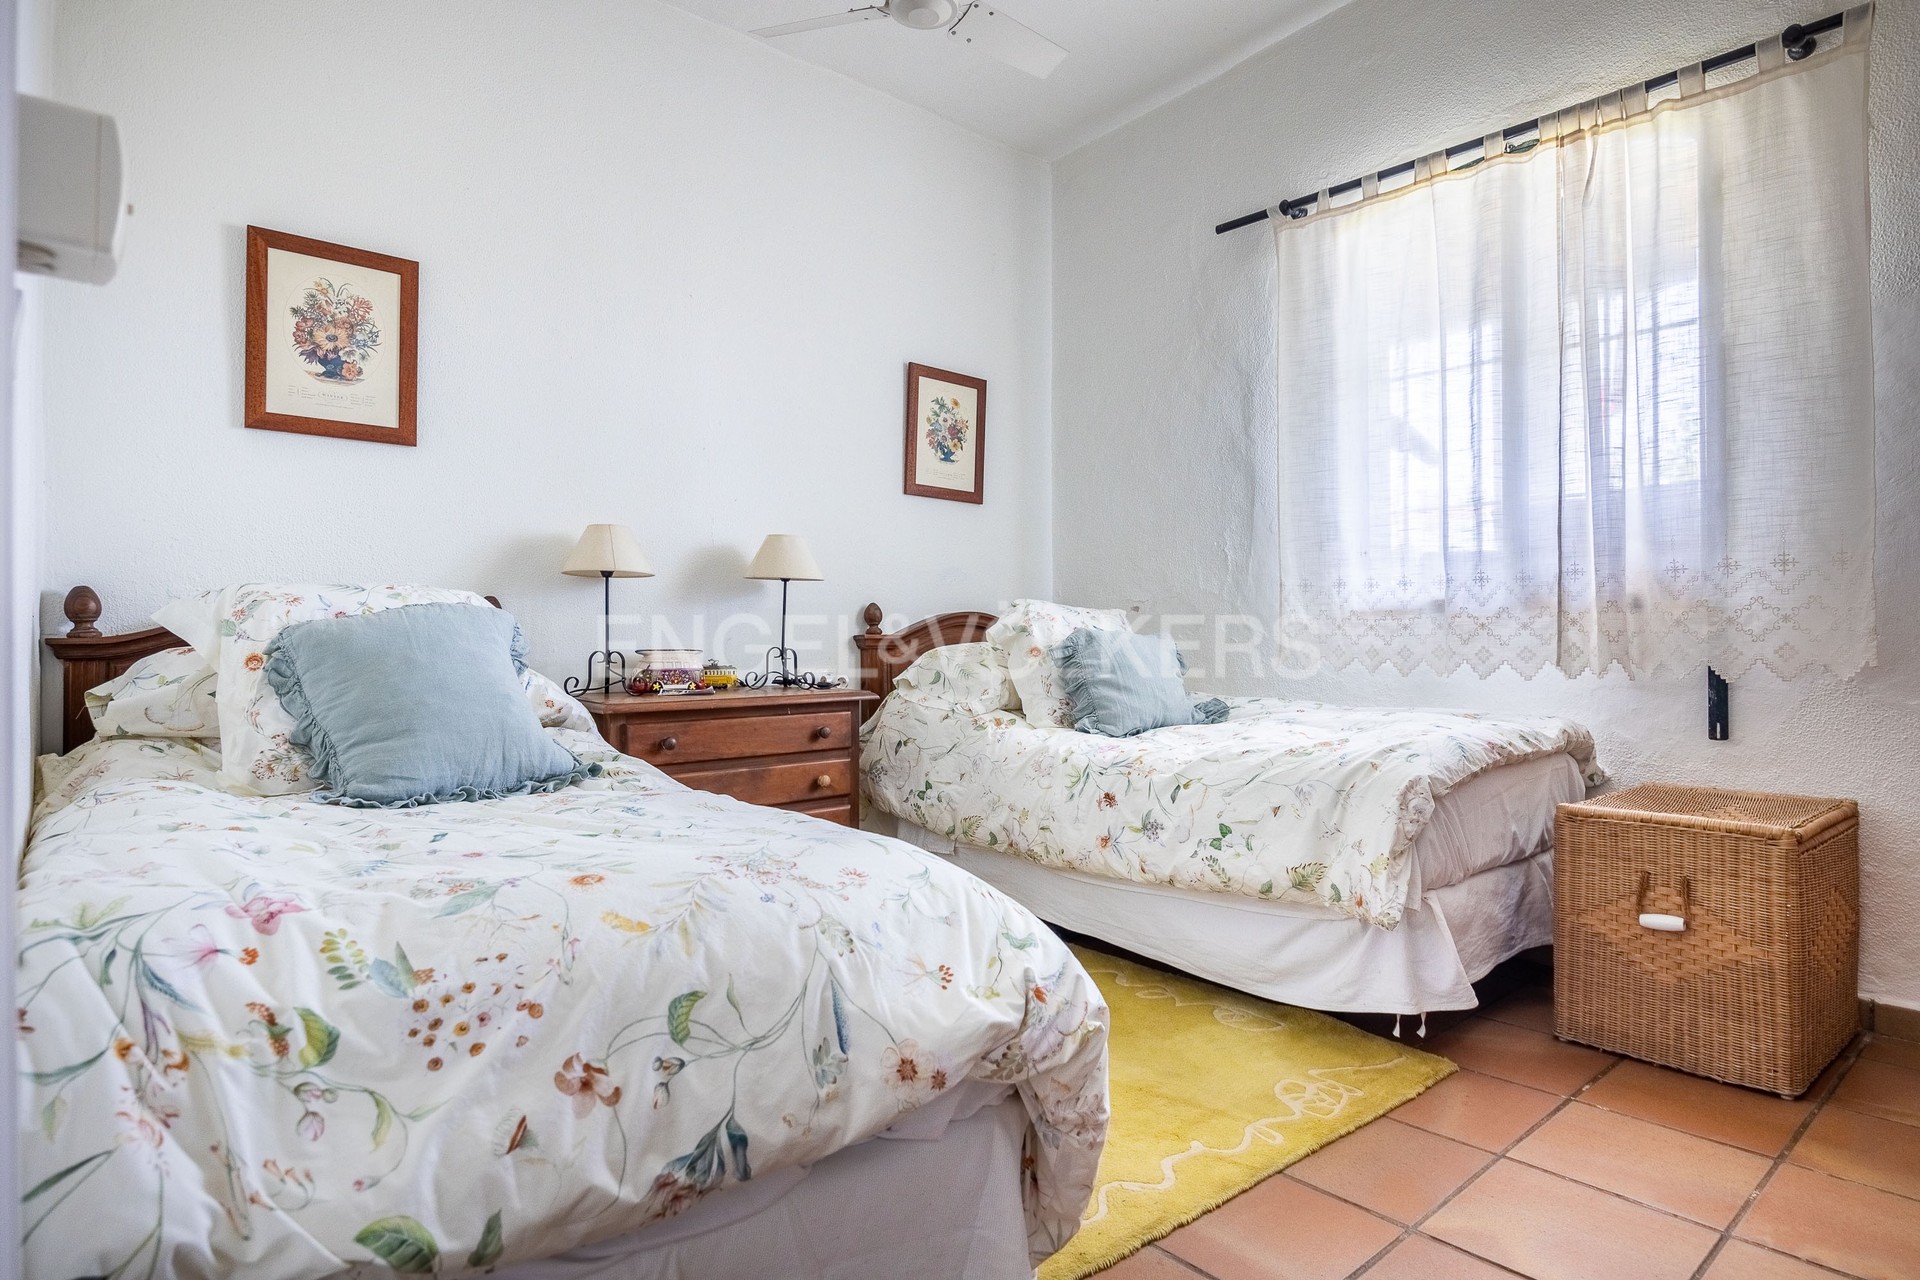 Casa en Burguillos - Dormitorio dobles camas individuales.